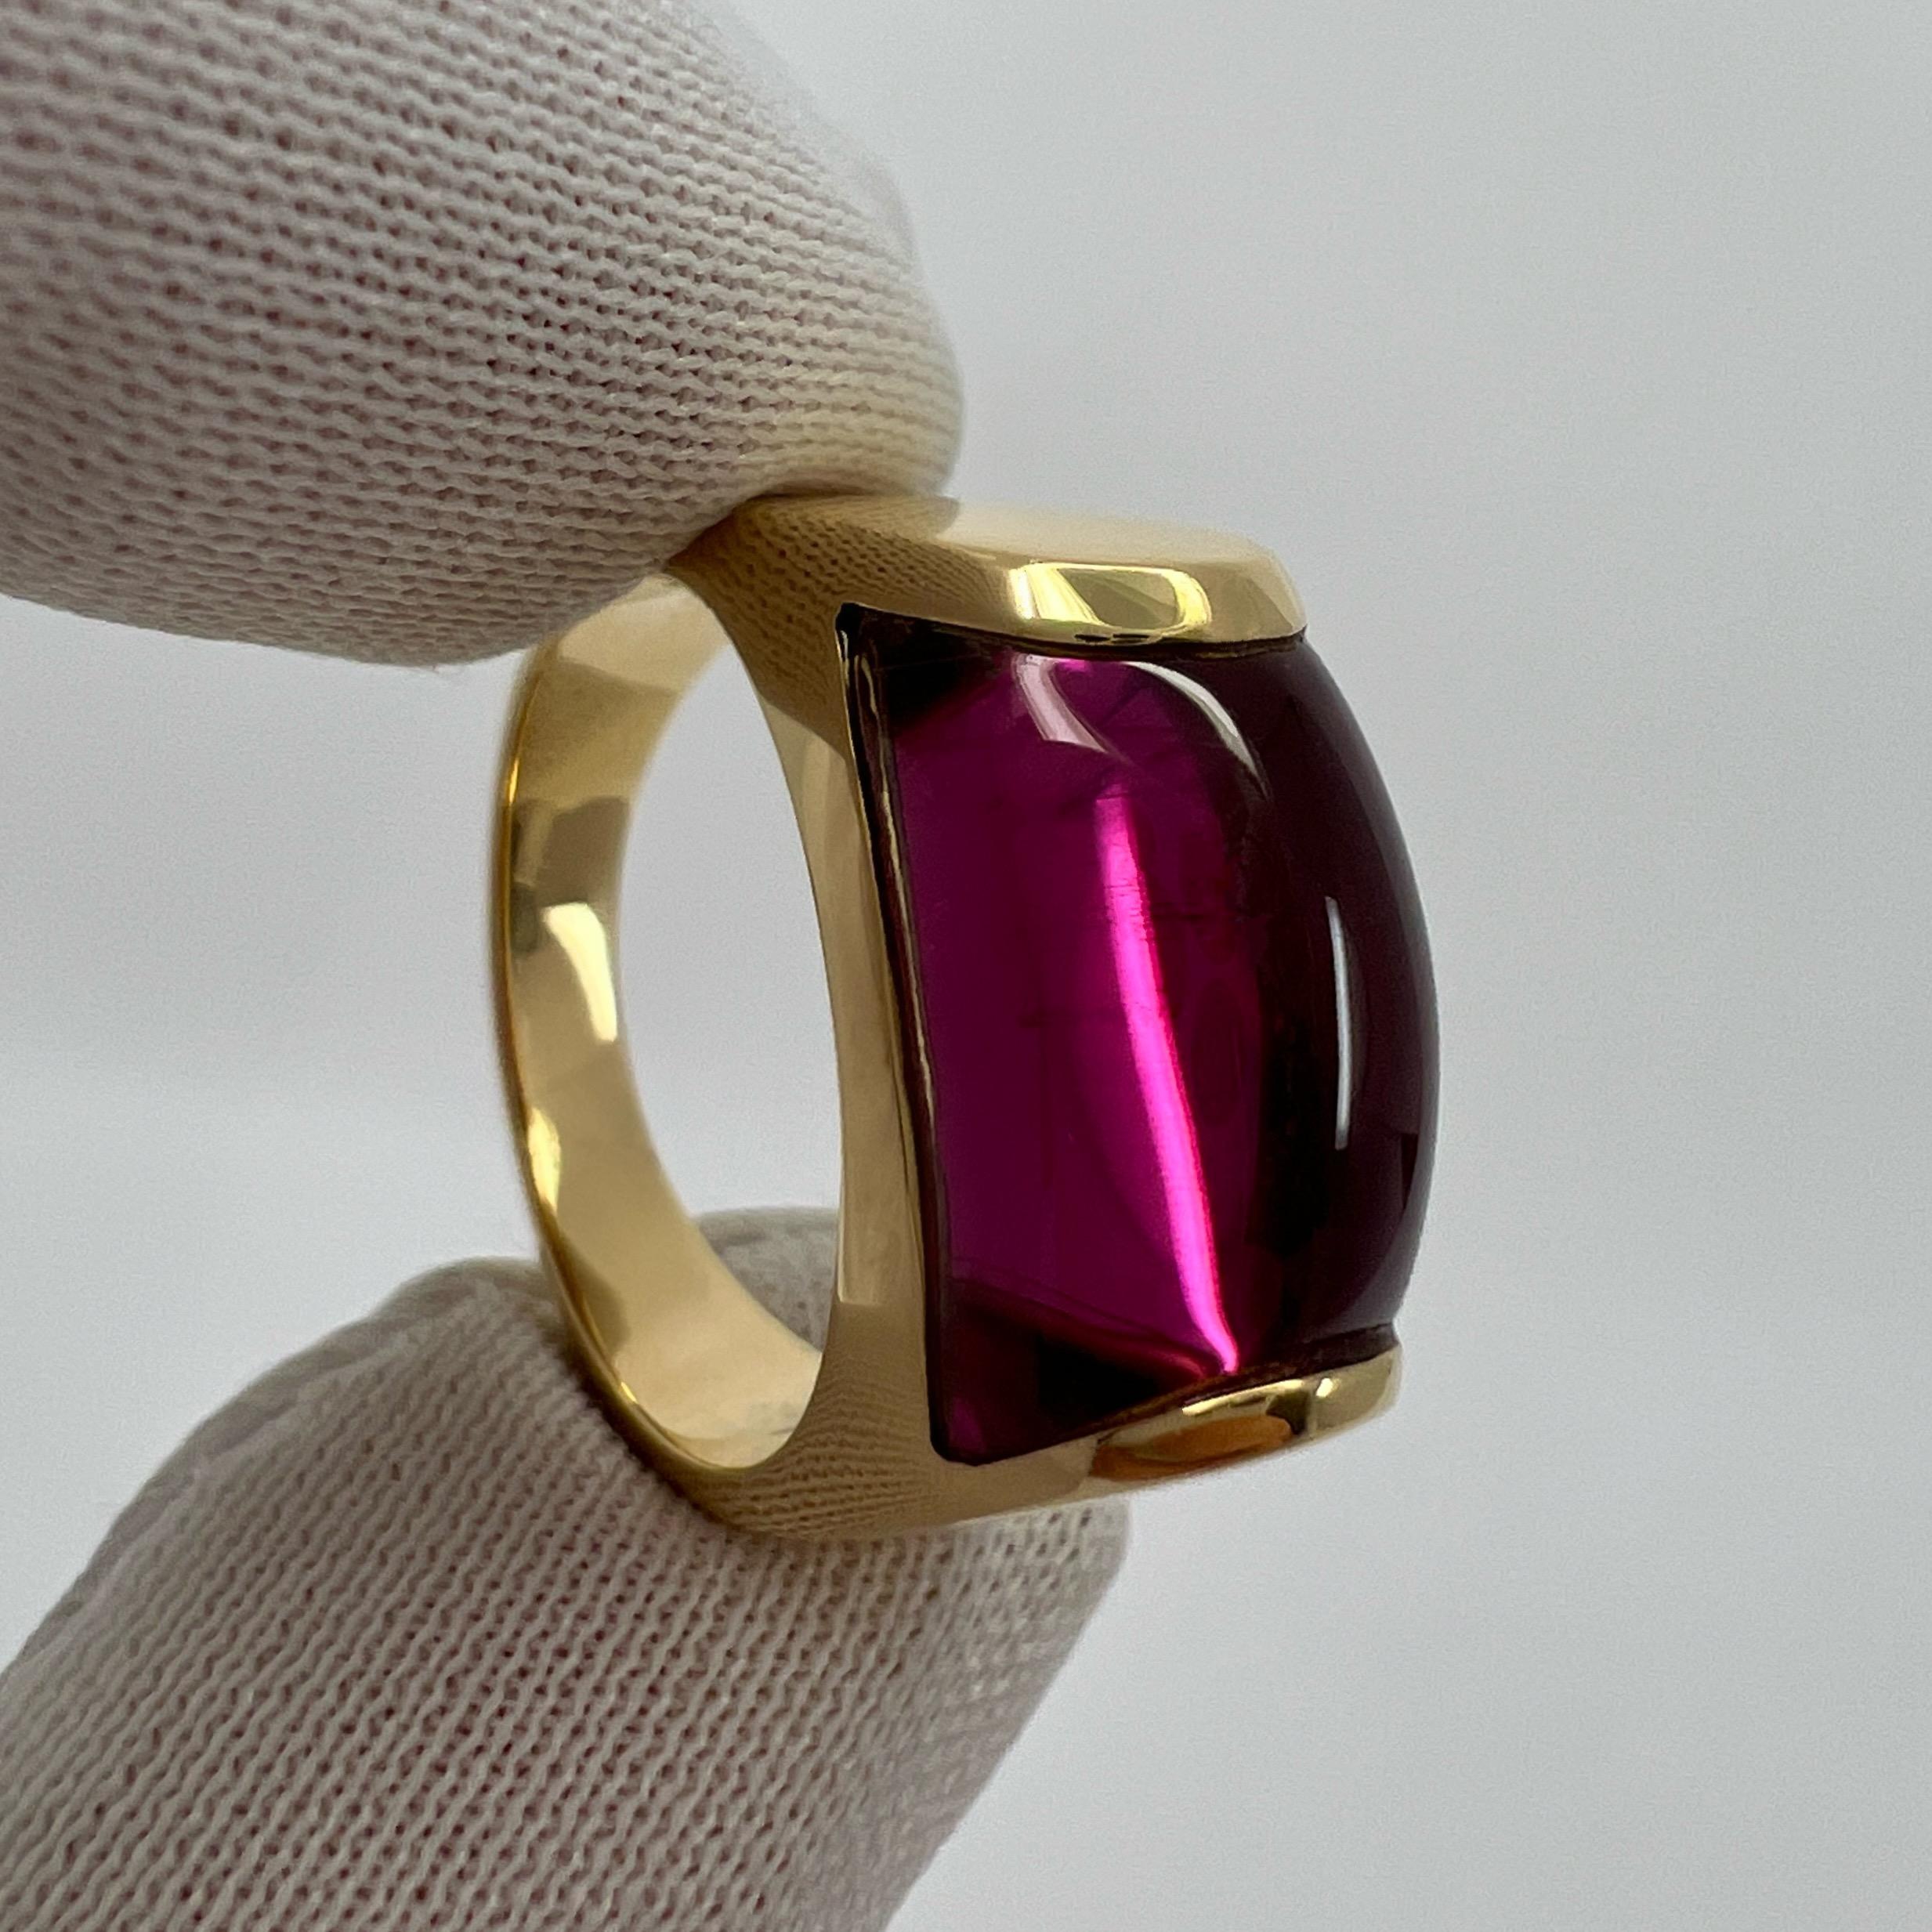 Rare Bvlgari  Tronchetto 18k Yellow Gold Rubellite Pink Tourmaline Ring with Box 4